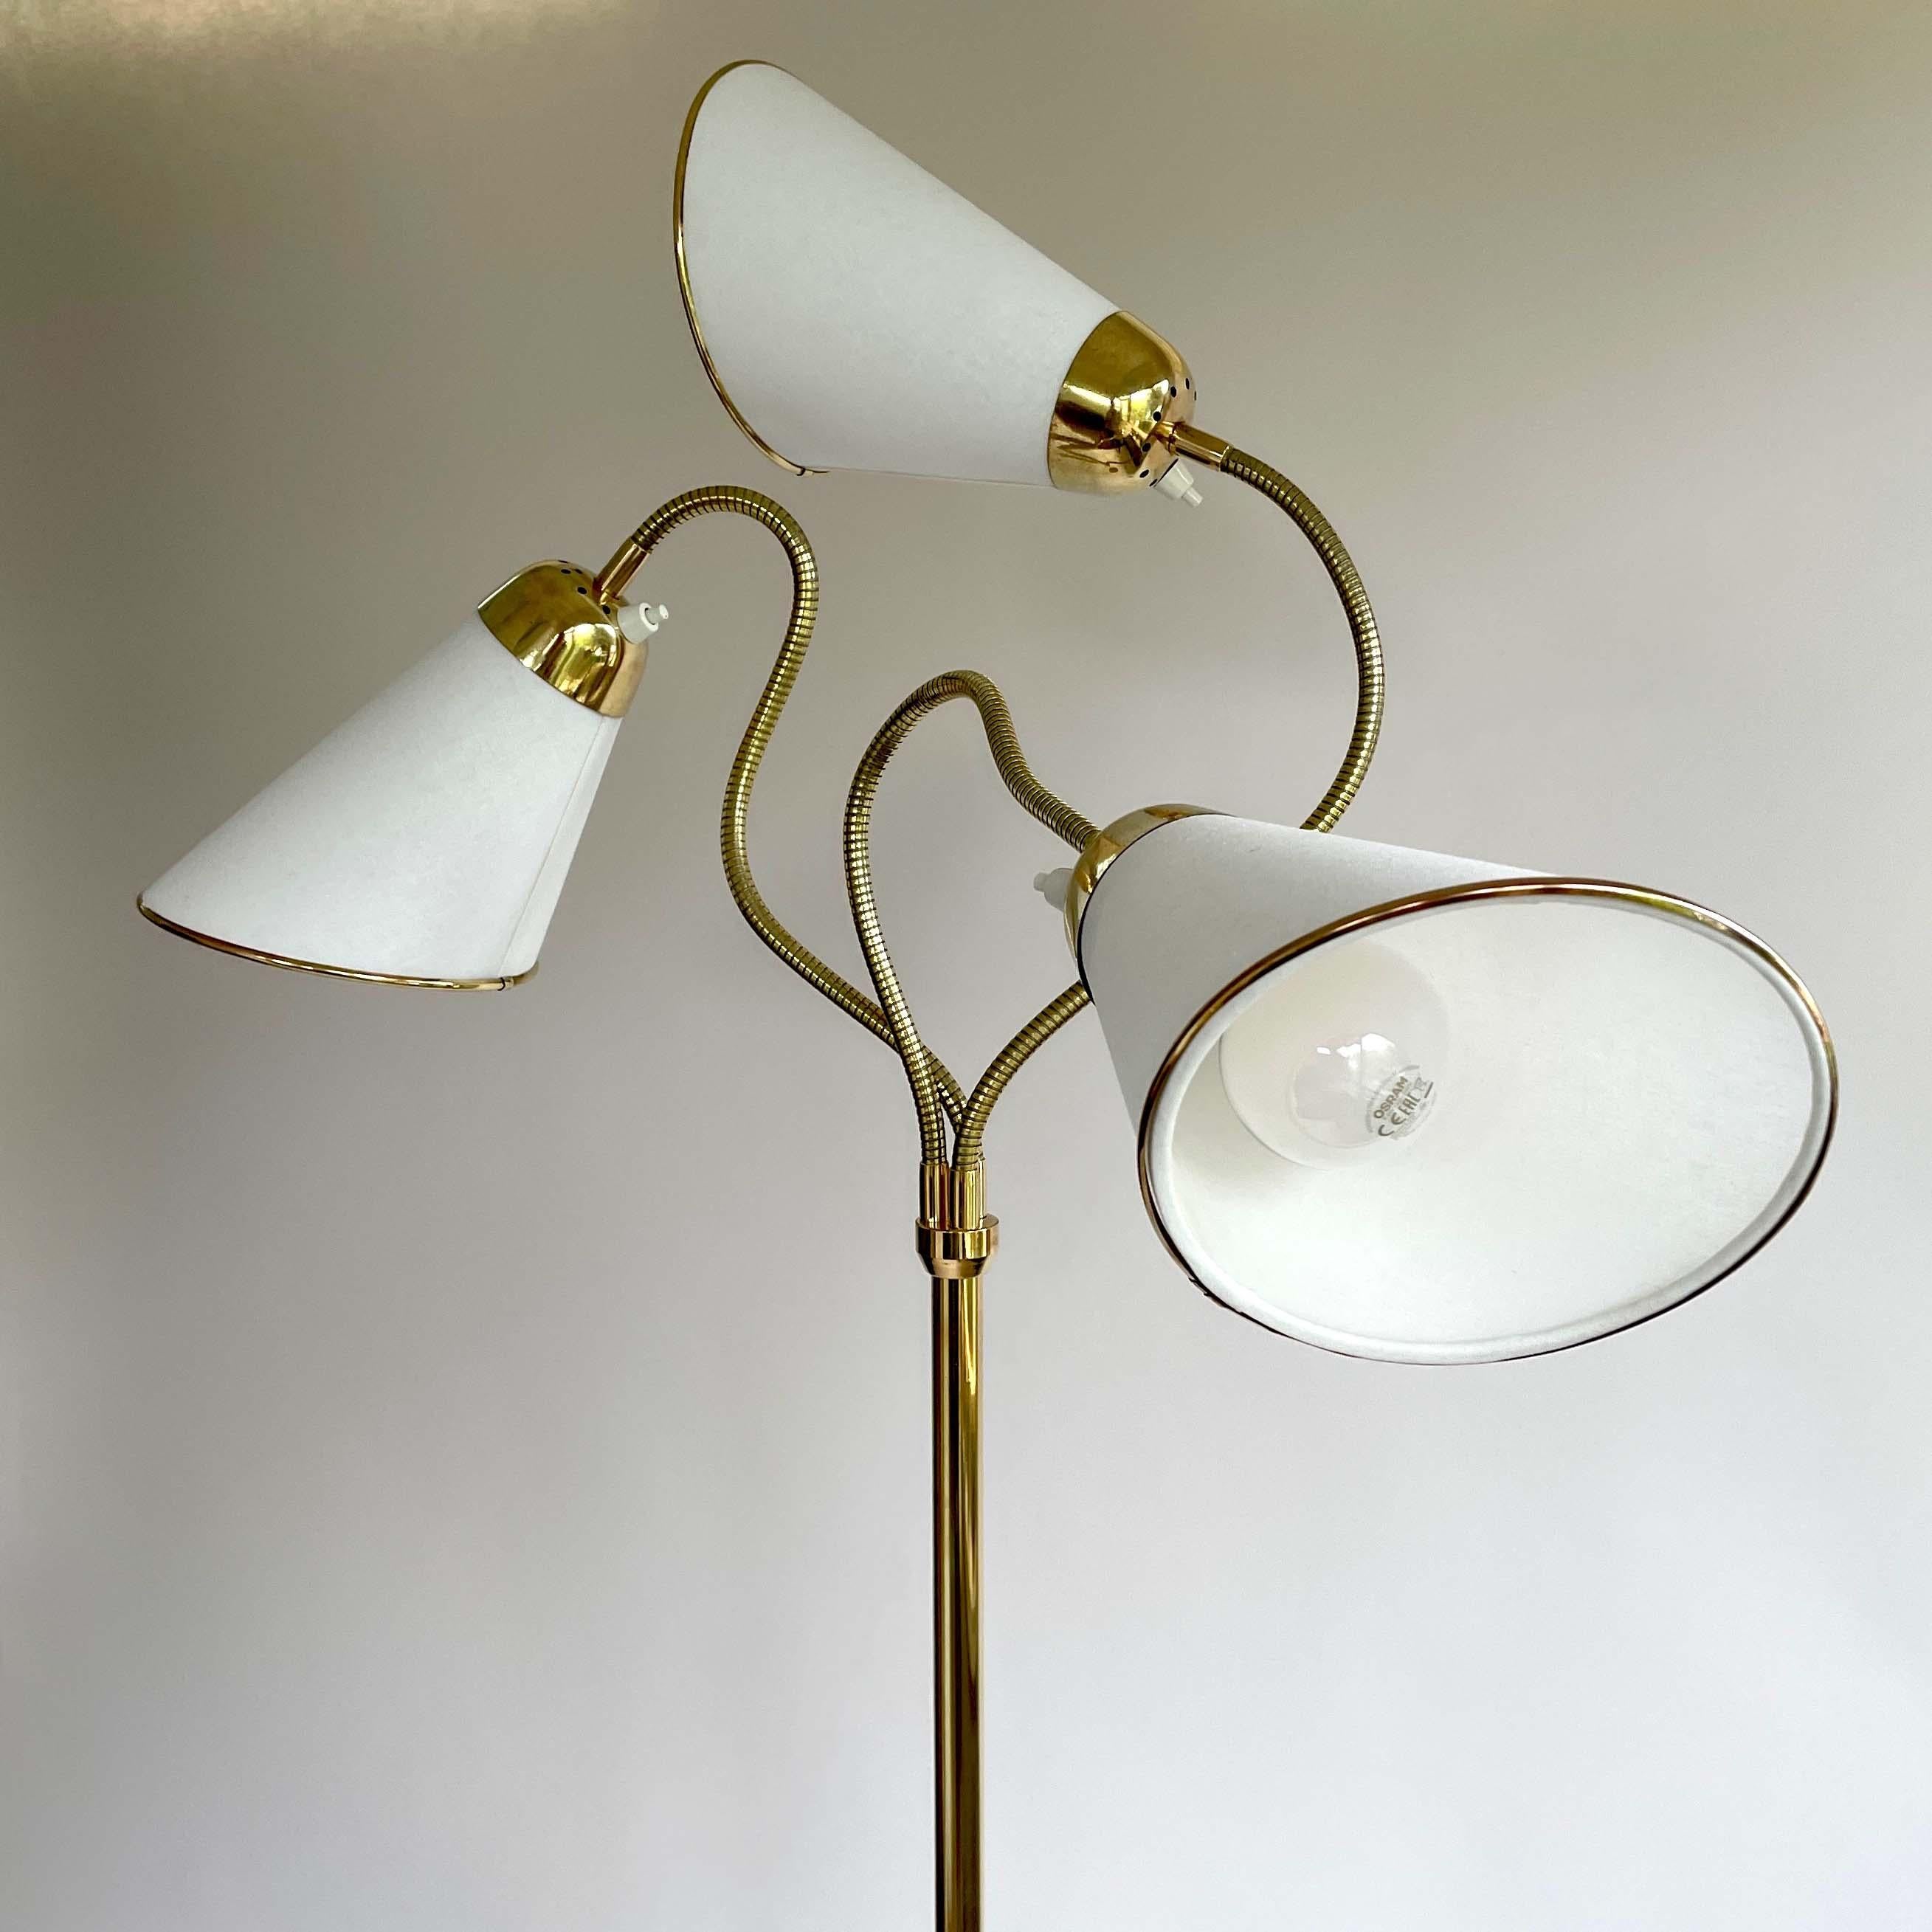 Triple Gooseneck Brass & Off White Fabric Floor Lamp, Sweden 1950s For Sale 4